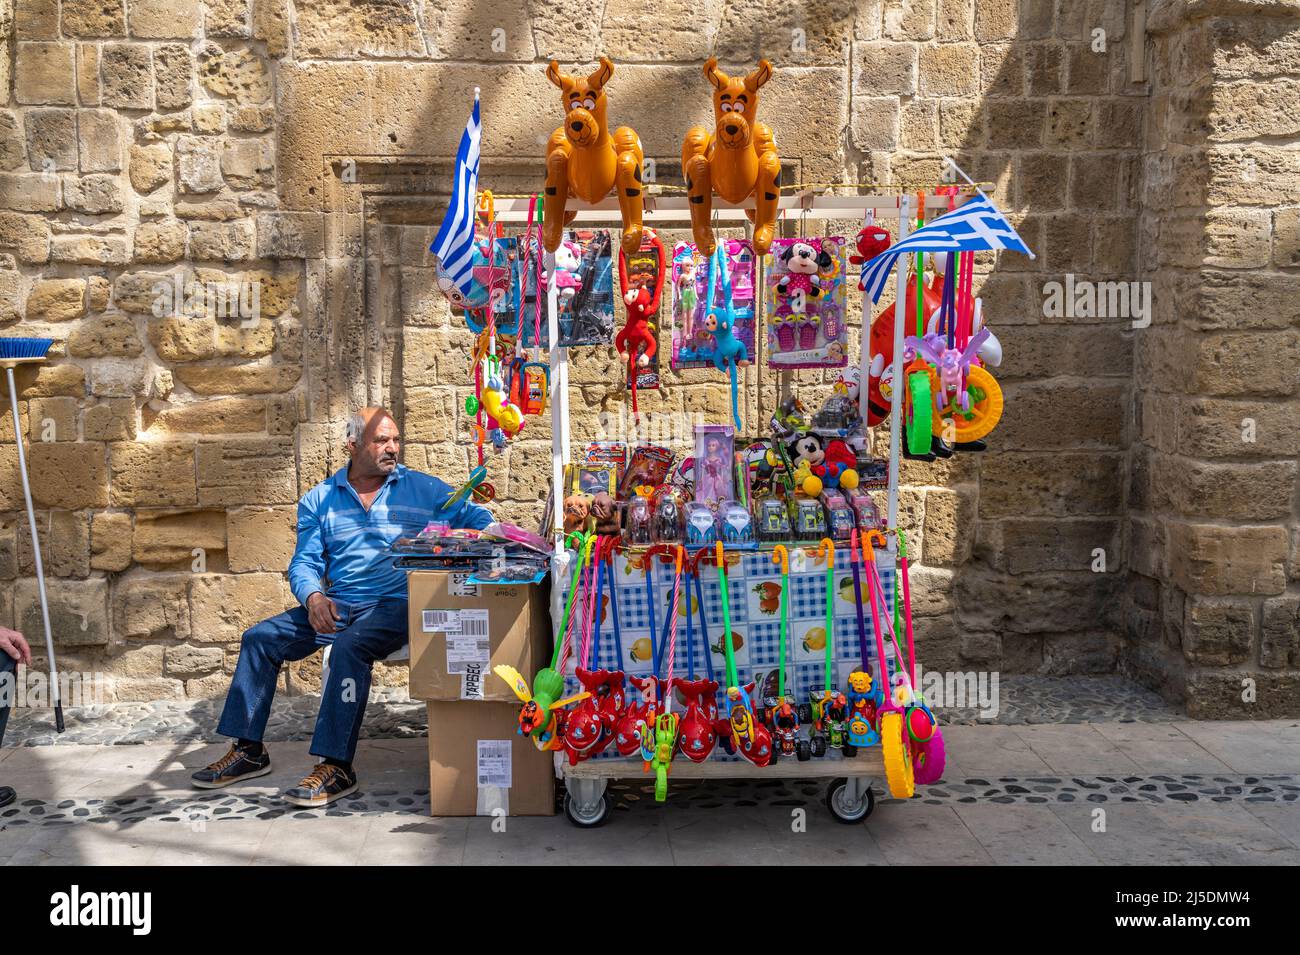 Mobiler Stand mit Spielzeug in Nikosia, Zypern, Europa | Mobile stall vendita giocattoli, Nicosia, Cipro, Europa Foto Stock